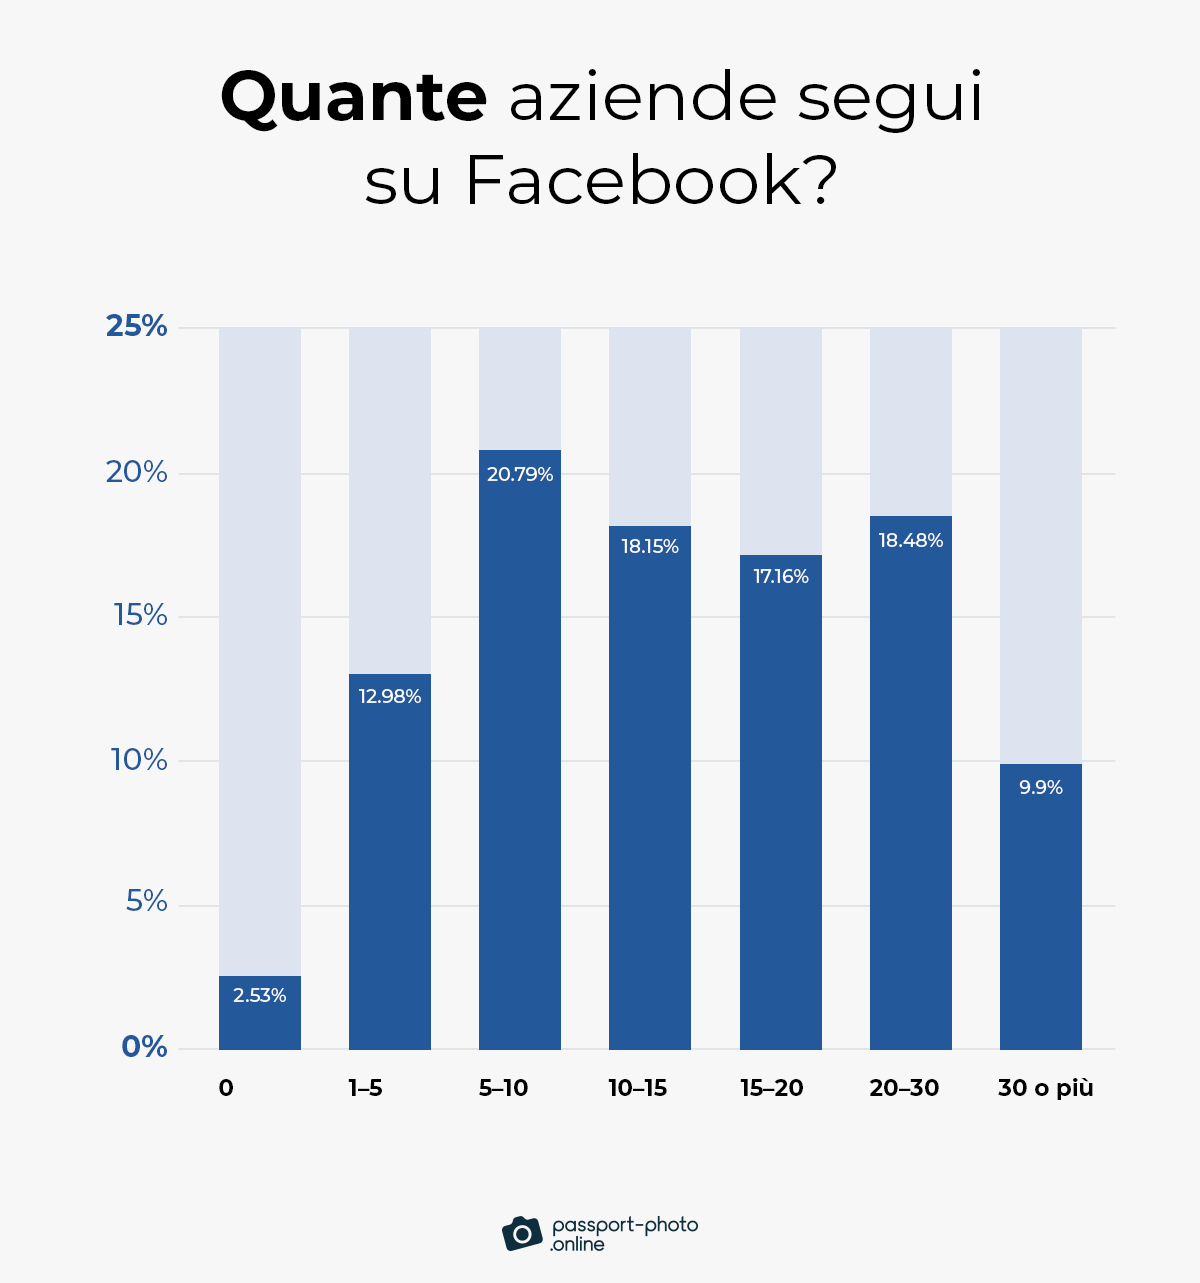 la maggior parte degli utenti di Facebook (56%) segue in media da 5 a 20 pagine aziendali